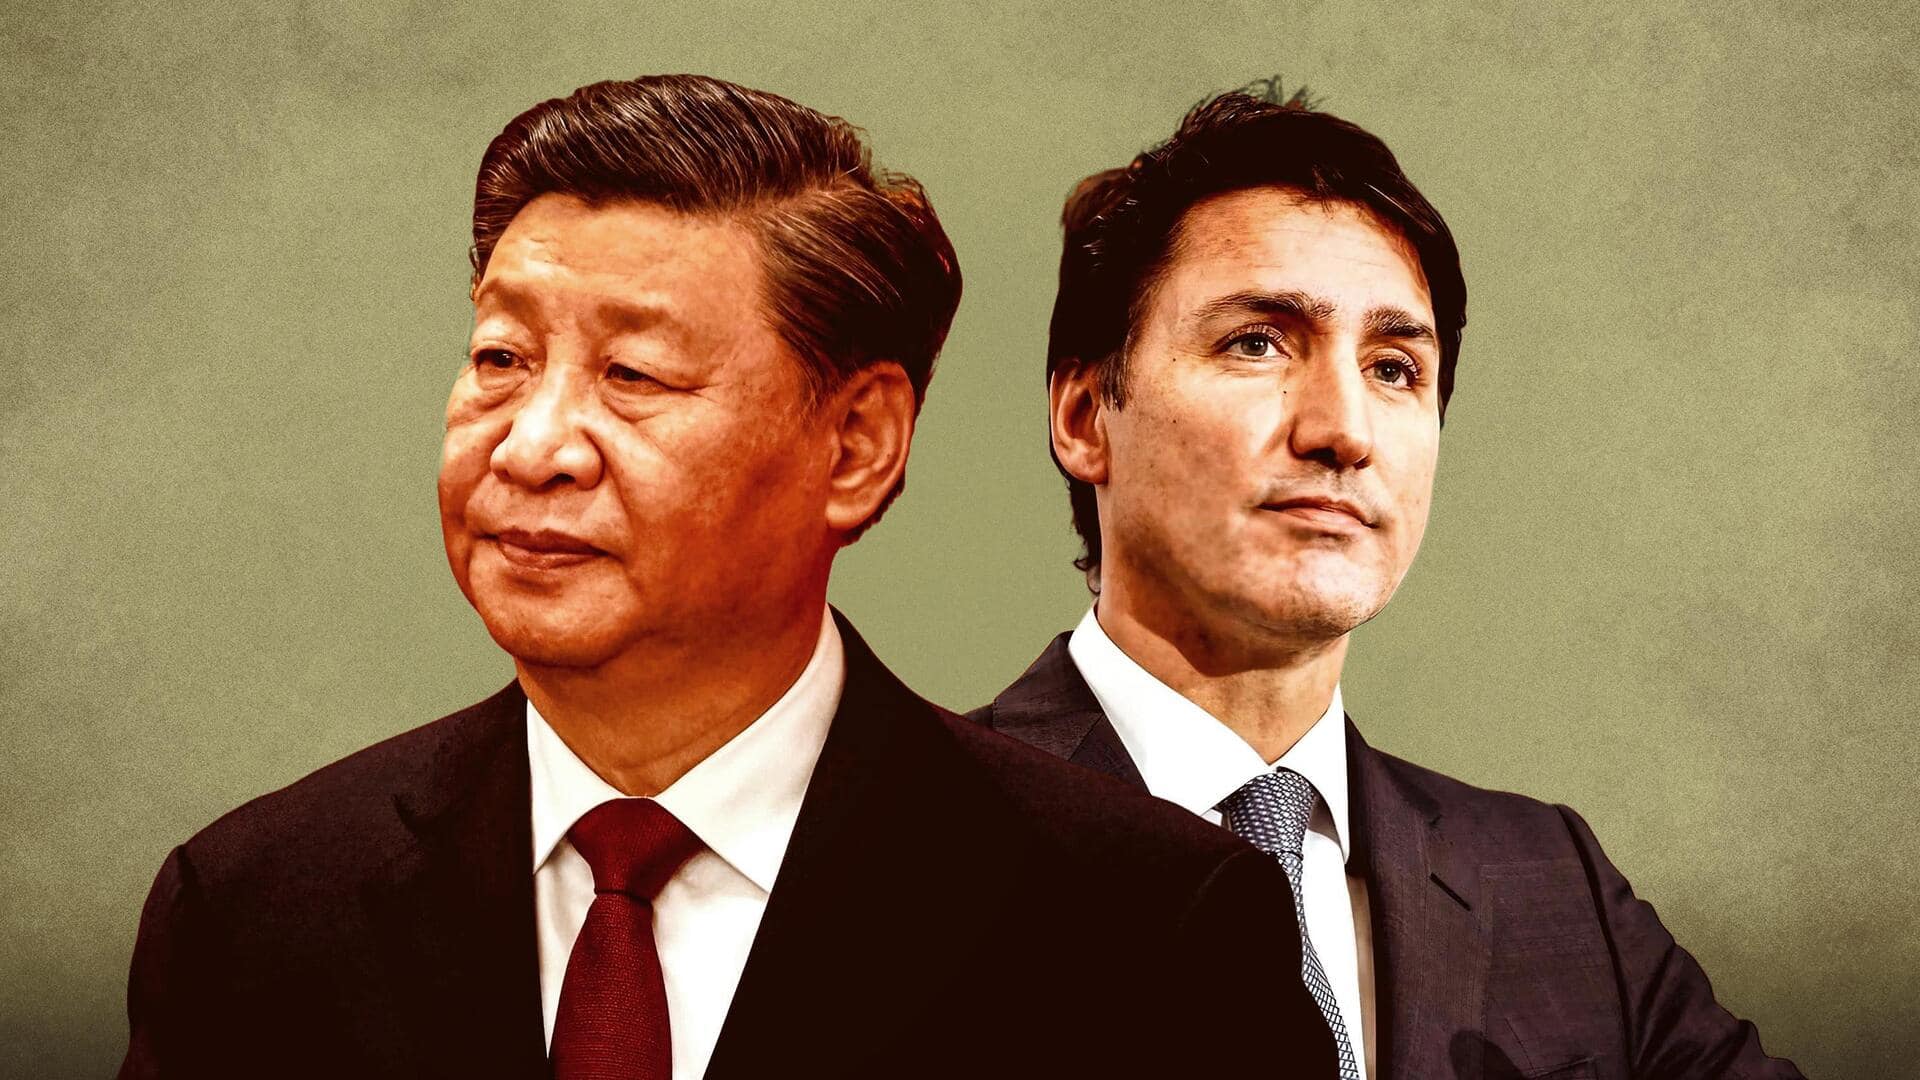 भारत के साथ तनाव के बीच चीन से शुरू हुआ कनाडा का टकराव, जानिये मामला